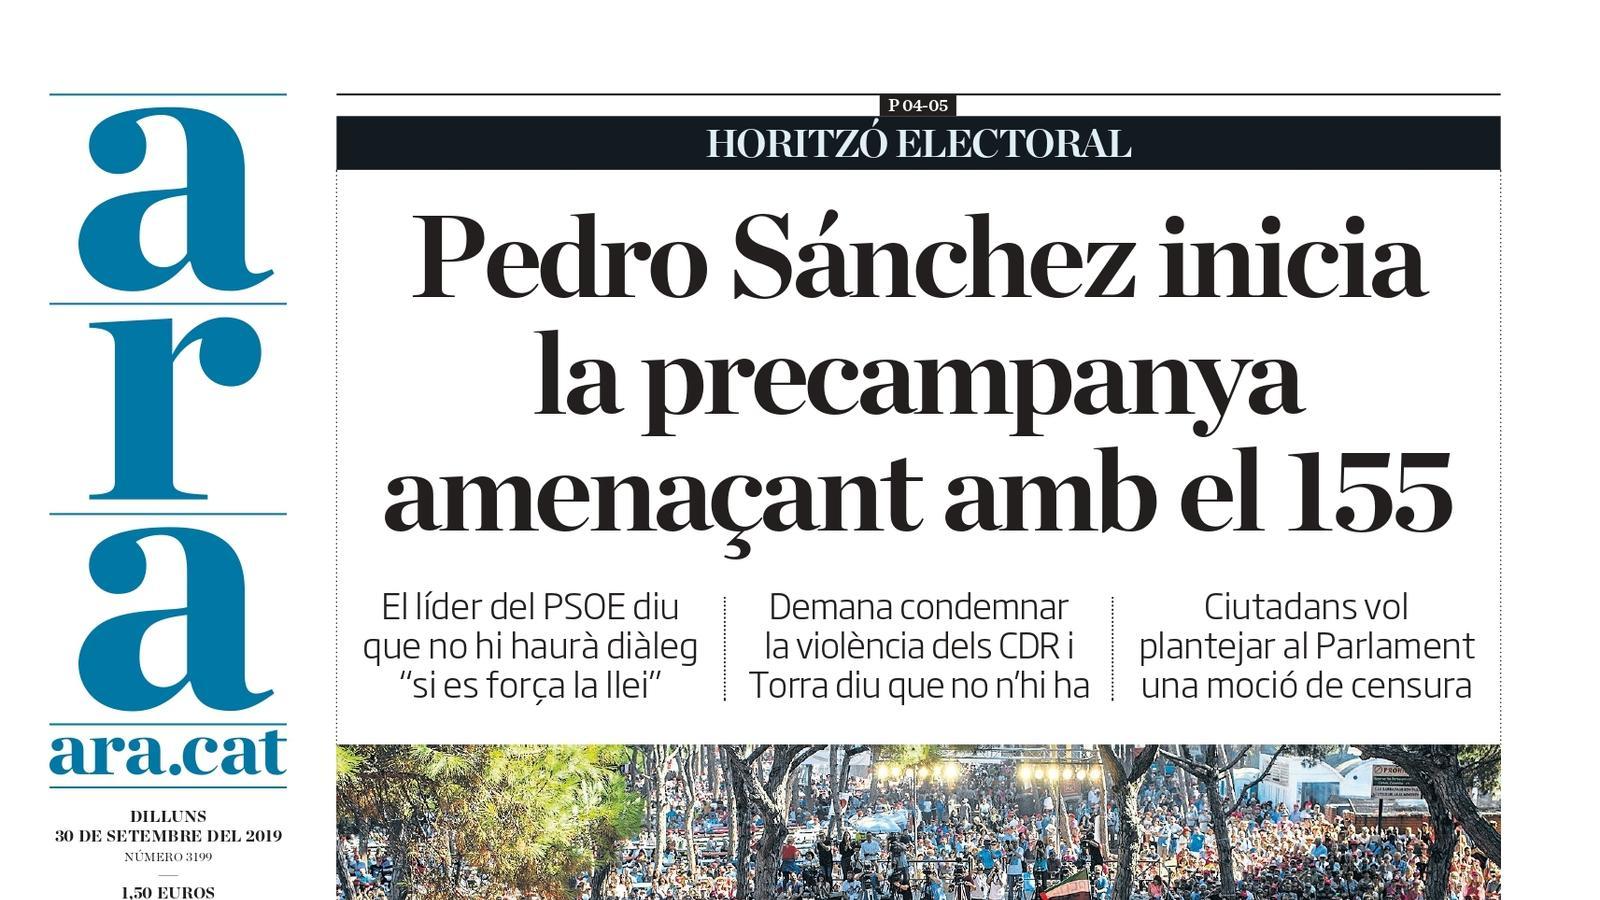 "Pedro Sánchez inicia la precampanya amenaçant amb el 115", portada de l'ARA